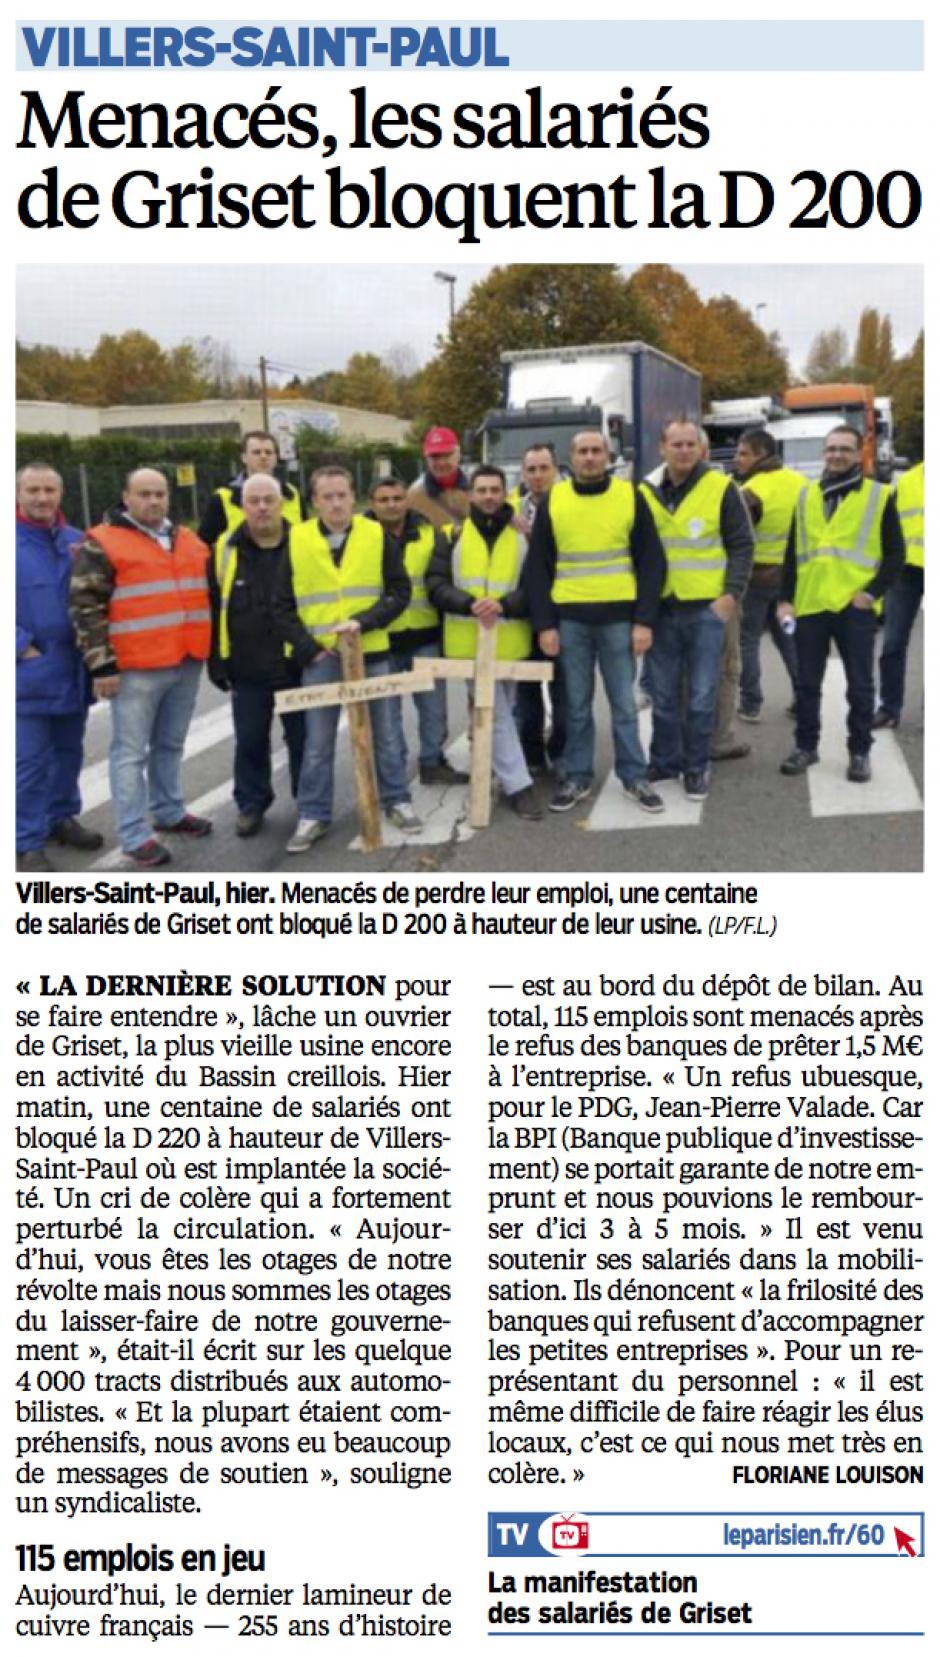 20151030-LeP-Villers-Saint-Paul-Menacés, les salariés de Griset bloquent la D200